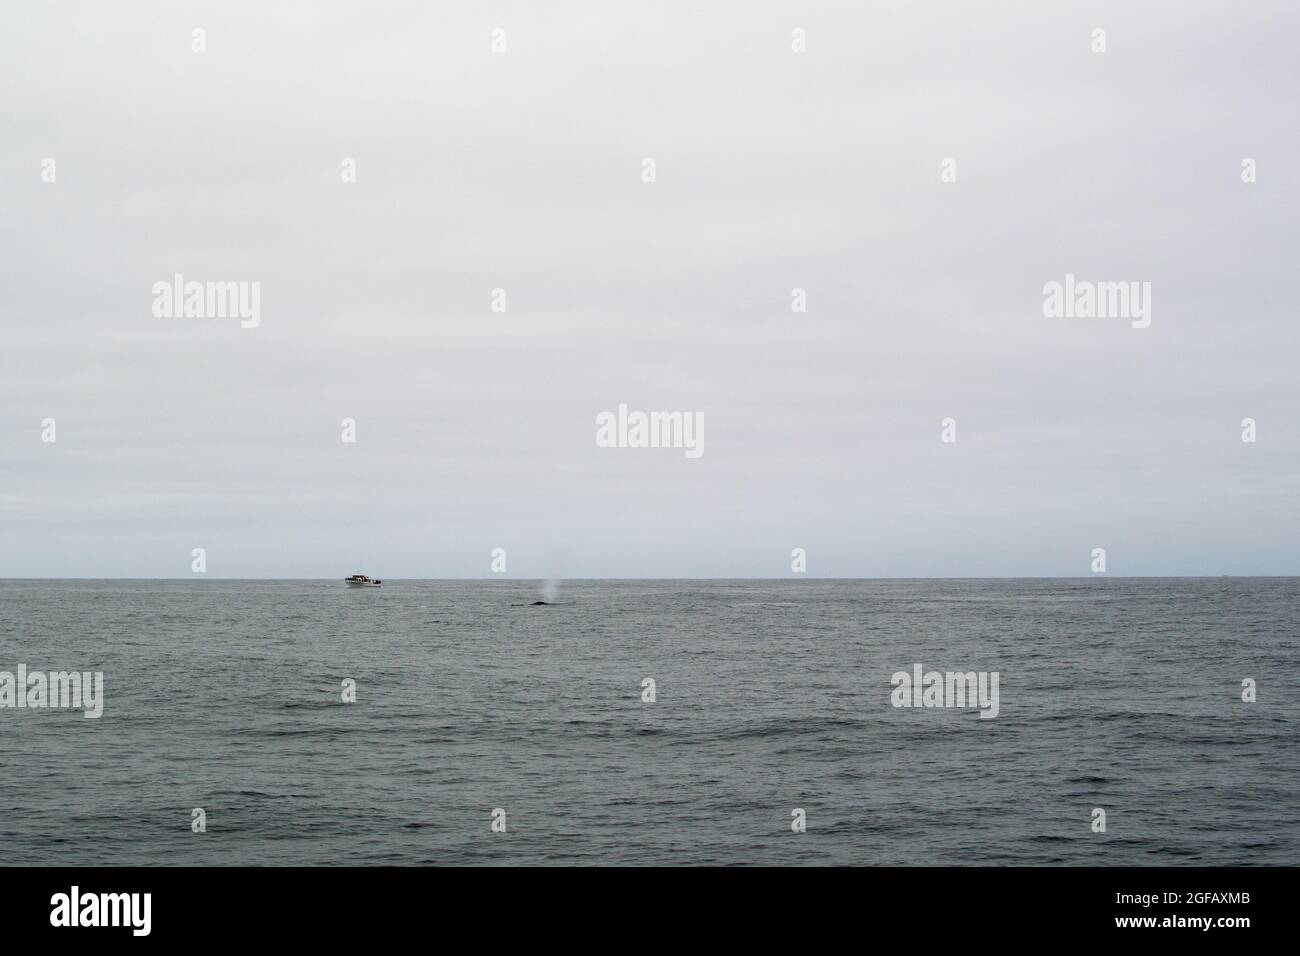 Blue Whale sale al aire frente al barco de avistamiento de ballenas. Pico de aire del orificio de purga. Día nublado en el océano. Foto de stock